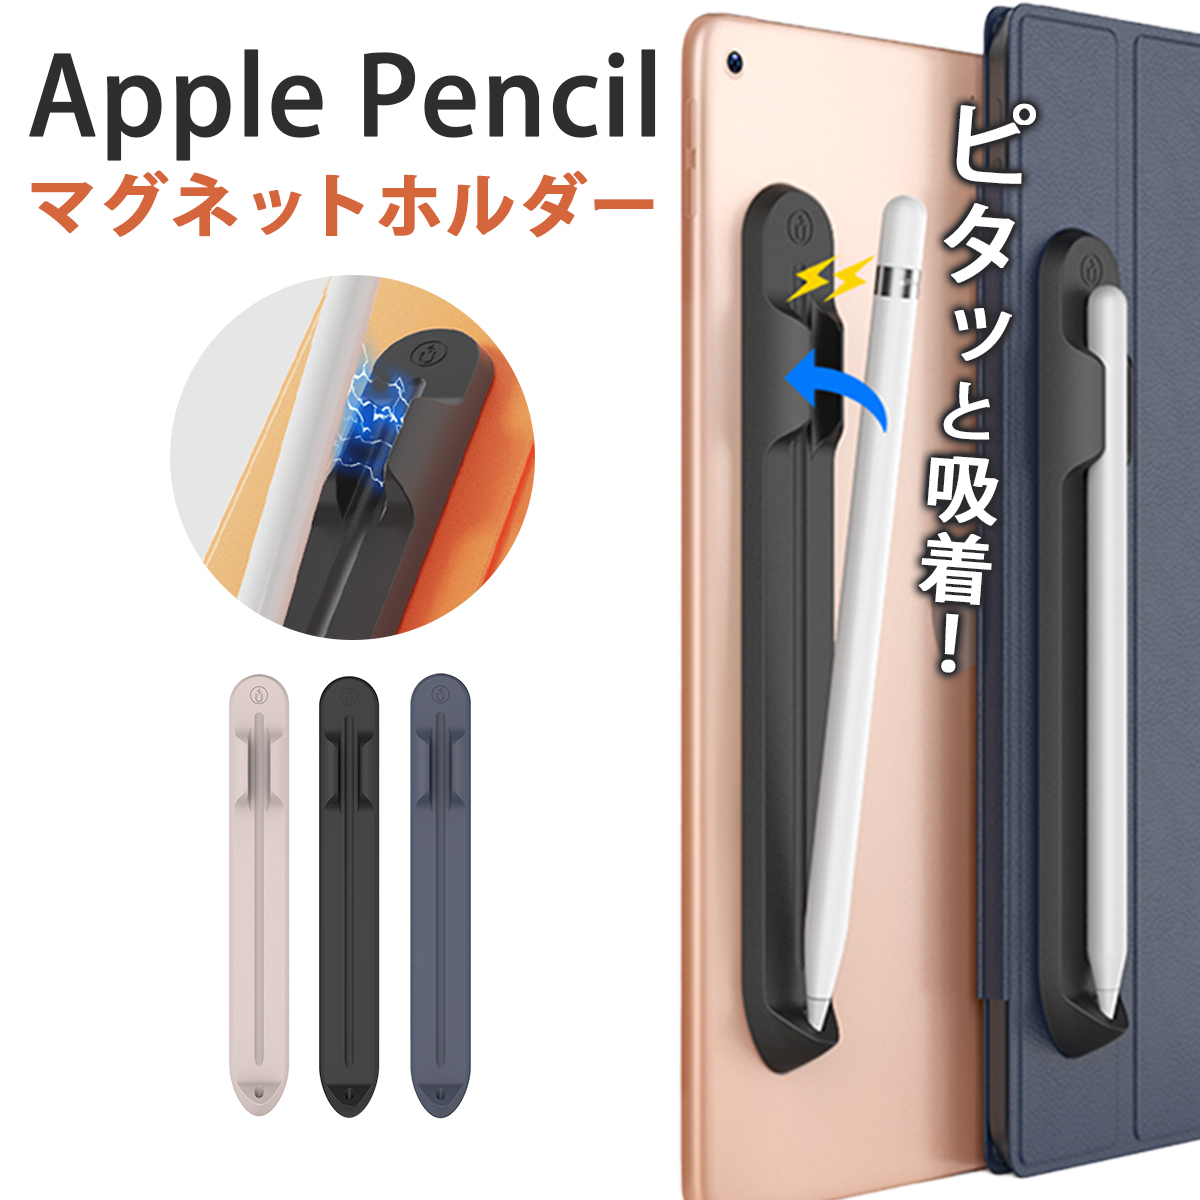 タッチペン ホルダー アップルペンシルカバー Apple Pencil マグネット 簡単装着タブレットに貼り付ける 接着シール式 保護 吸着 収納 ブラック グレー ピンク 送料無料